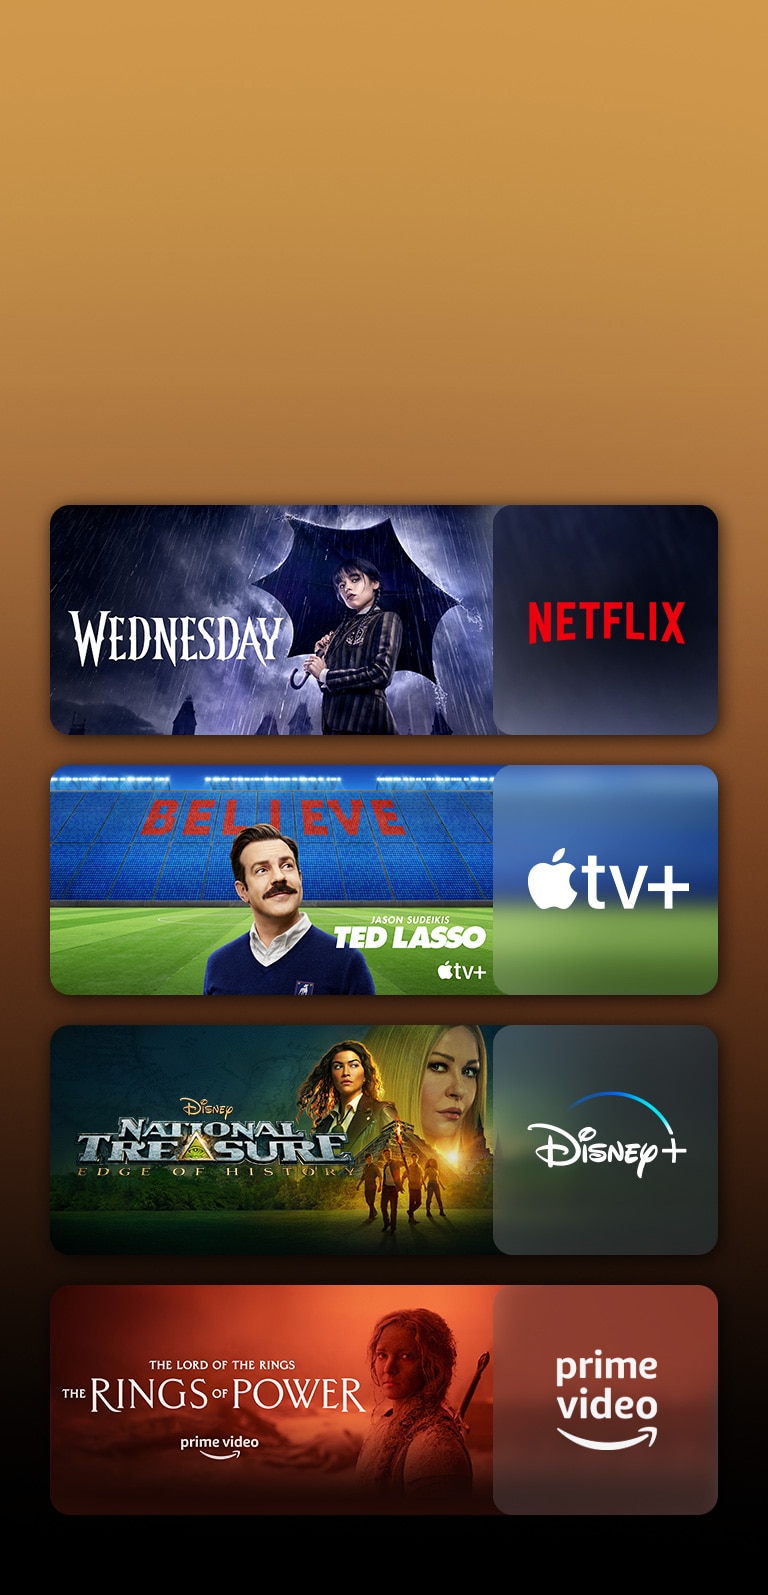 每個標誌旁都有串流媒體服務平台的標誌和對應的影片片段。顯示 Netflix 的《星期三》、Apple TV 的《泰德·拉索》、Disney Plus 的《國家寶藏》和 PRIME VIDEO 的《力量之戒》之圖片。